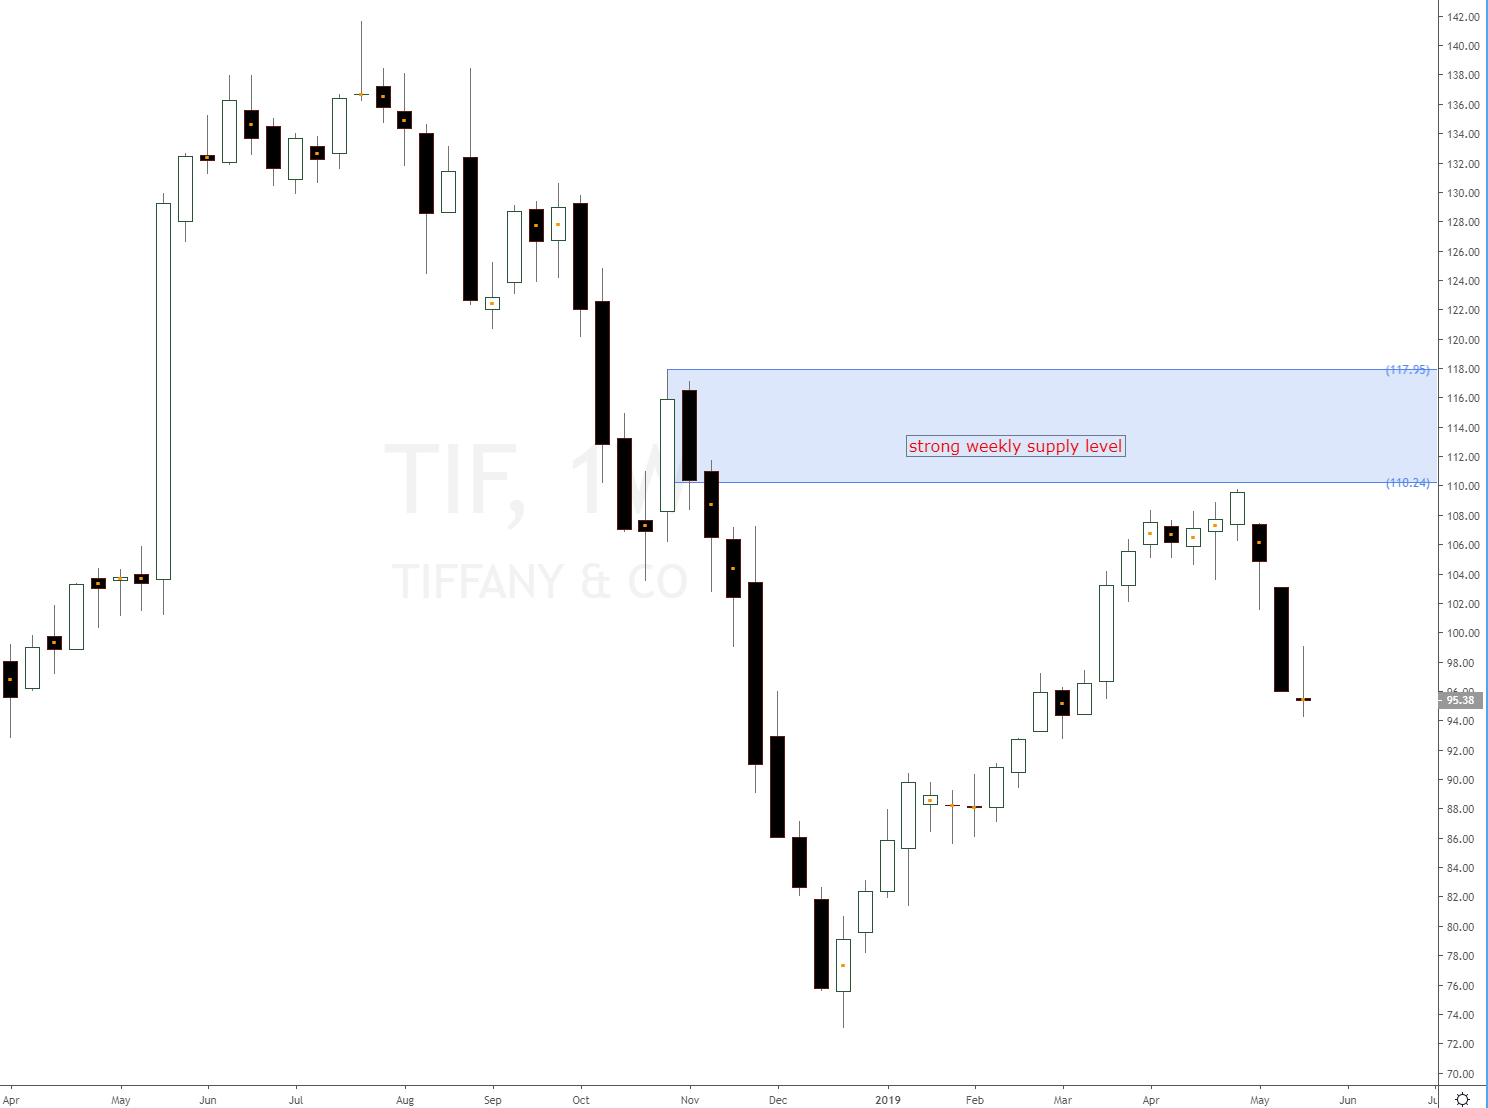 tiffany and co stocks